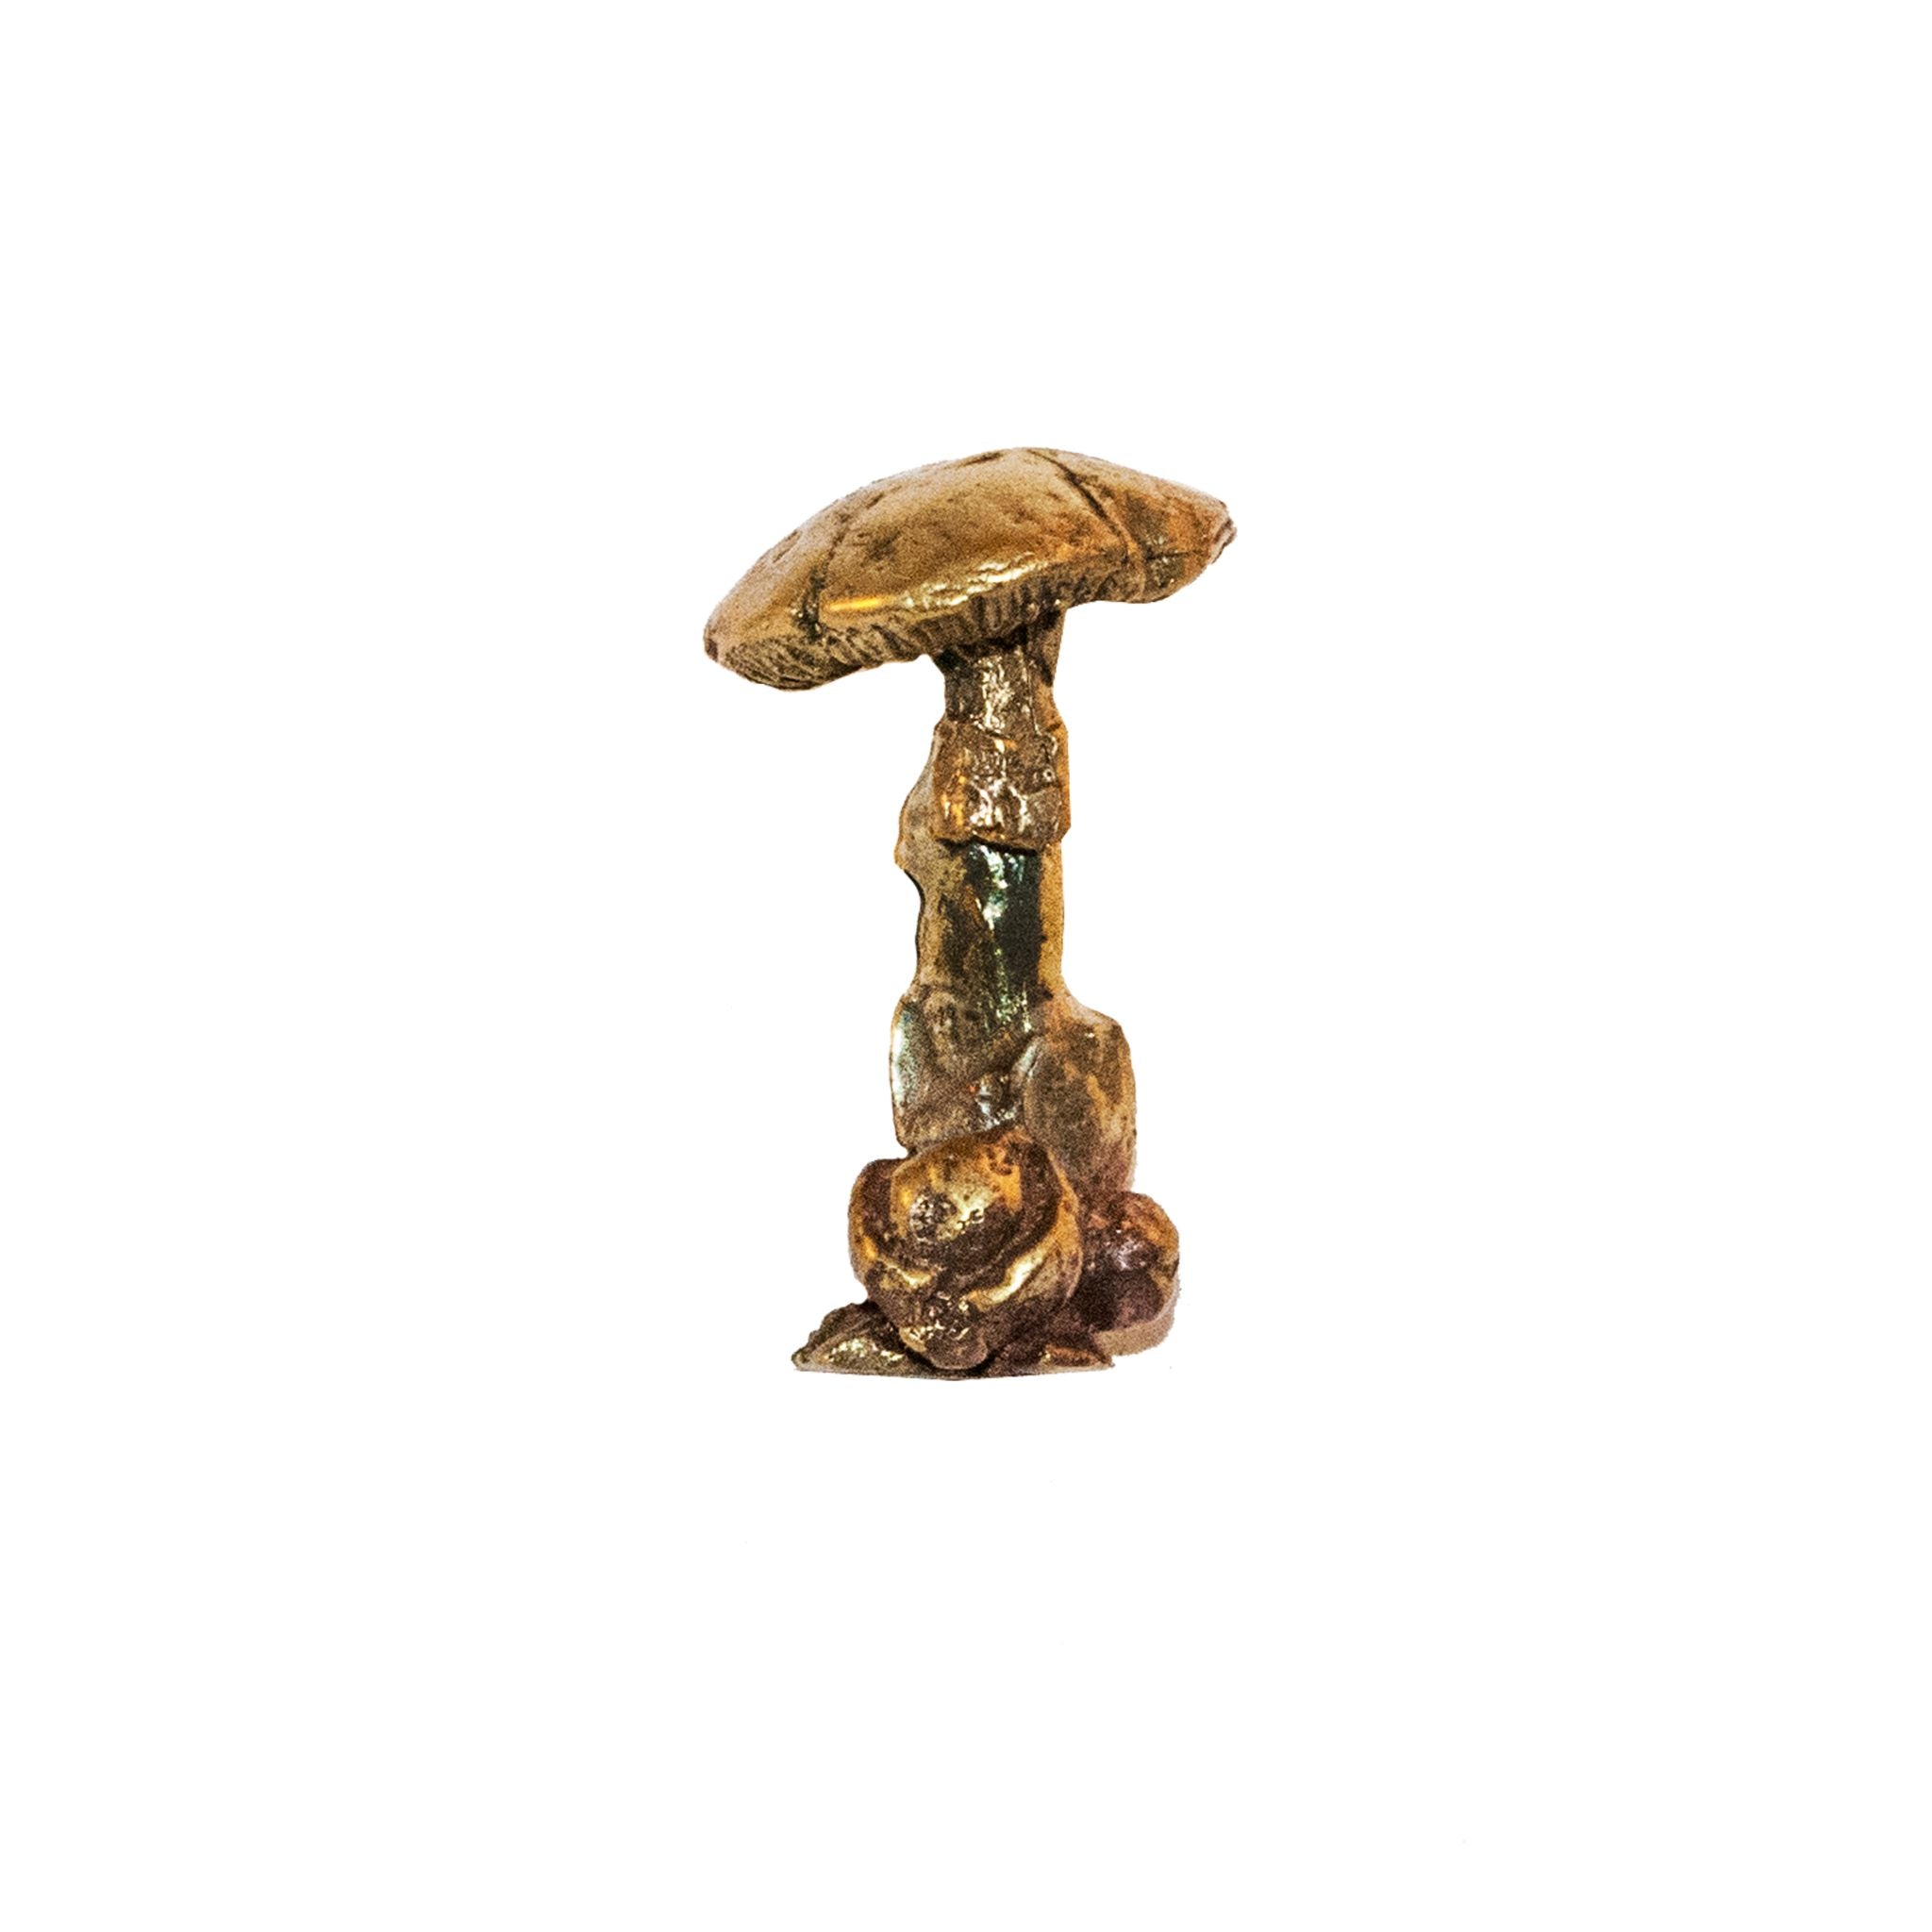 A brass knob shaped like an elongated mushroom.